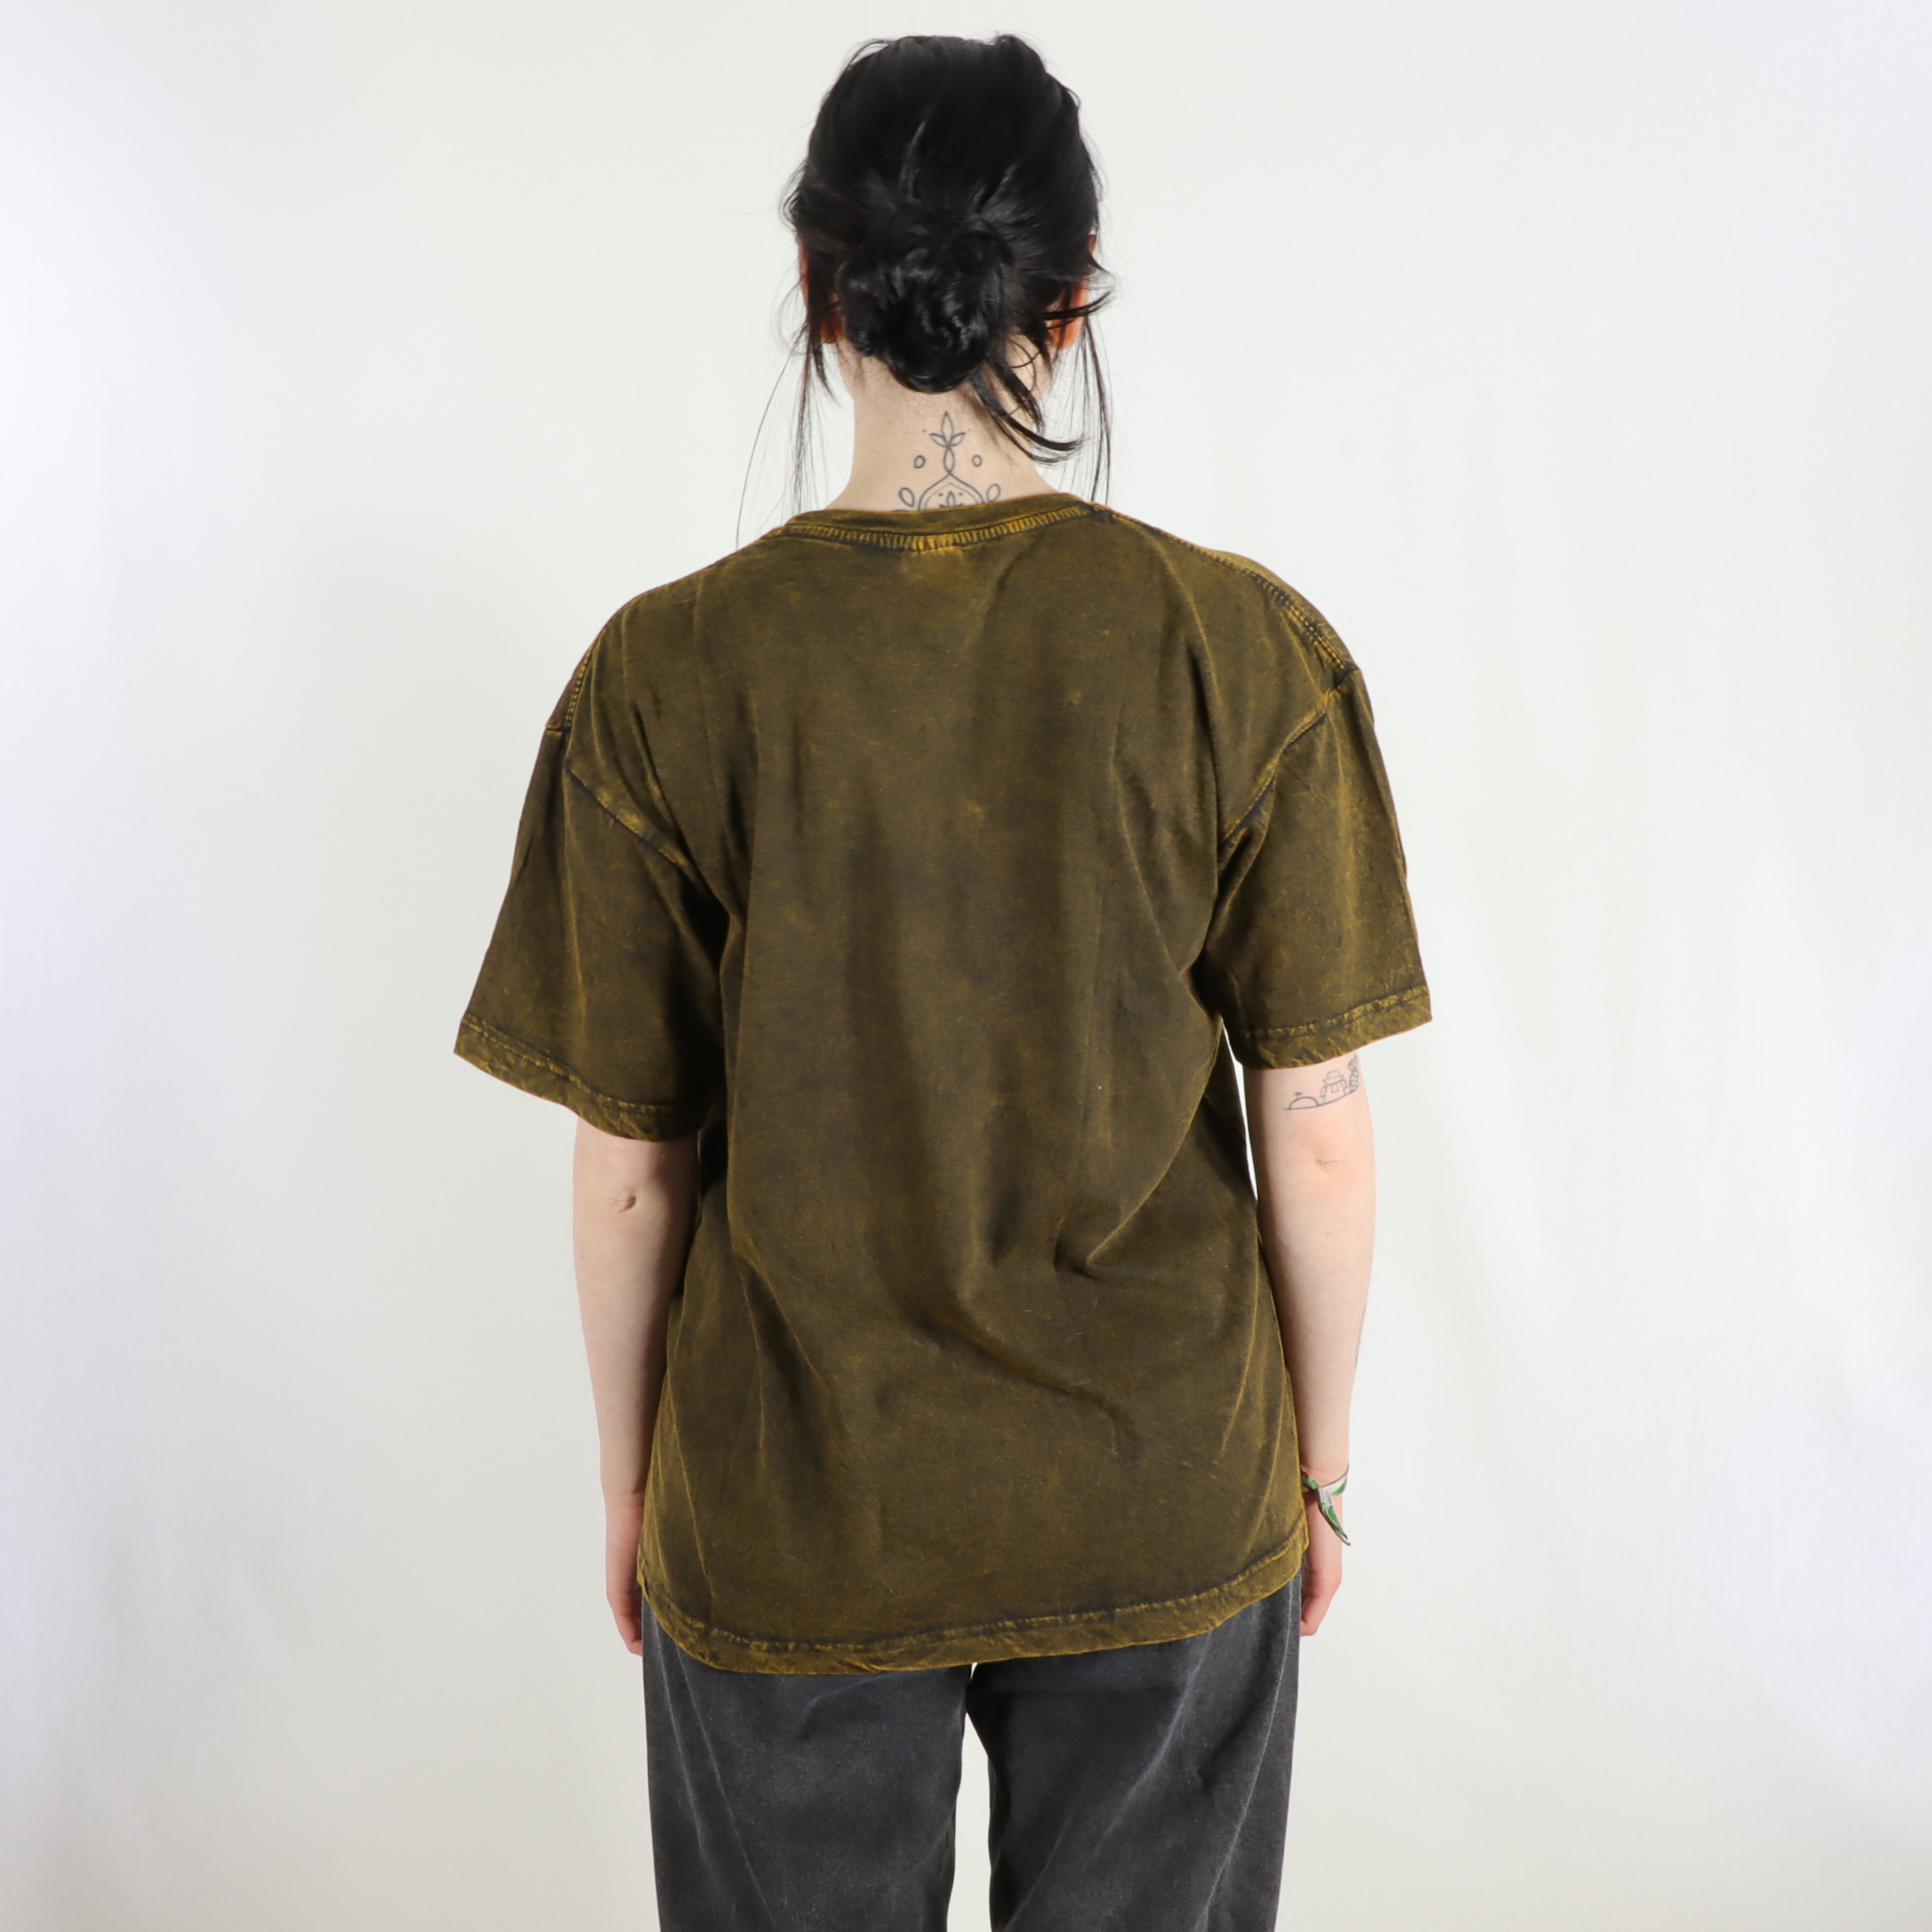 T-Shirt mit großem Mantra Aufdruck - 100% Baumwolle - im Stonewash Used Look Design - bequem und lässig - Fair gehandelt aus Nepal